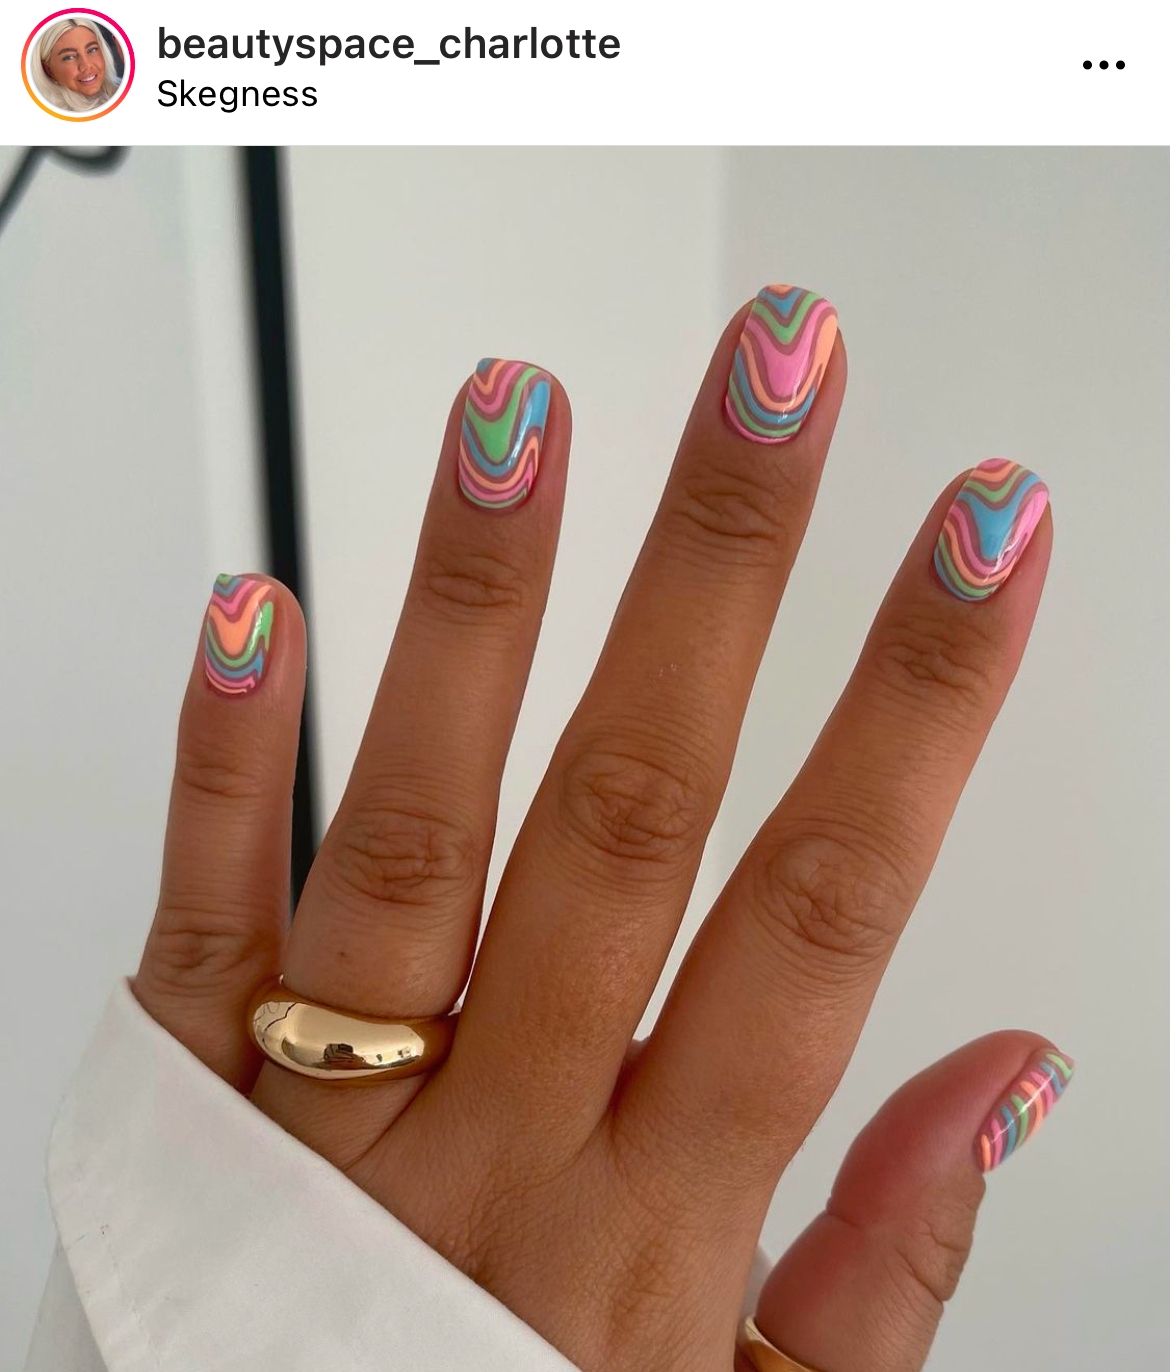 spring nail designs 2022